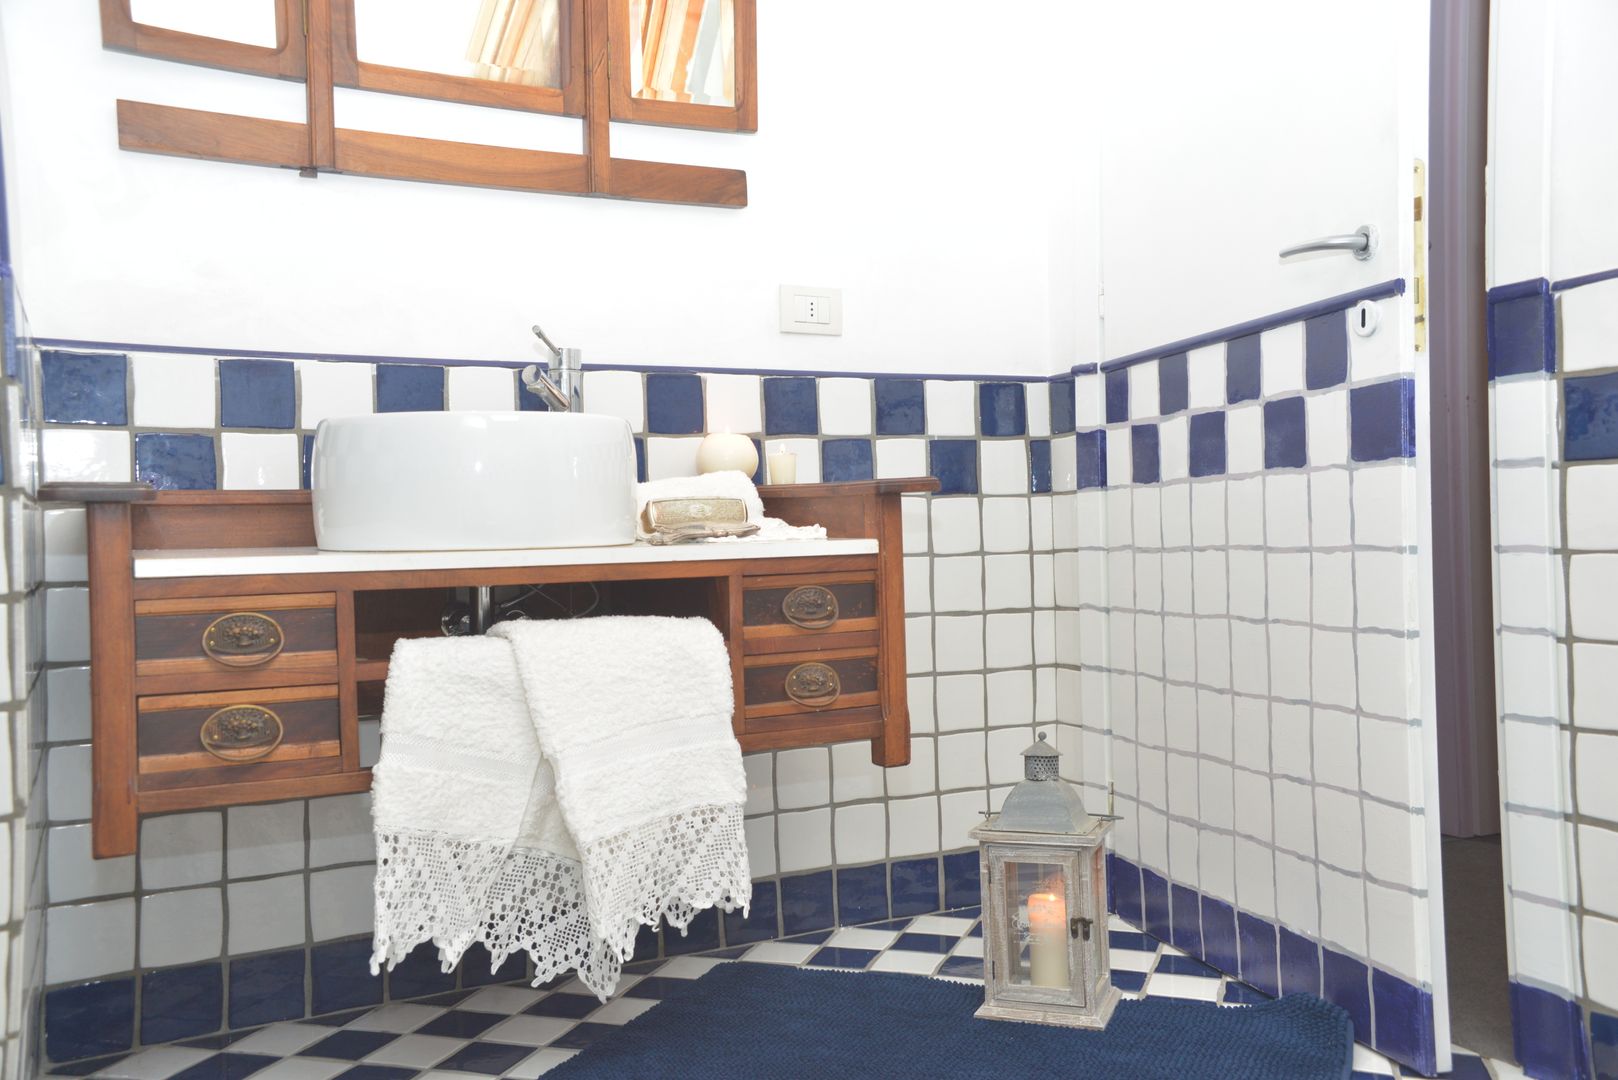 ristrutturazione bagno in mansarda Home Atmosphere Bagno in stile classico Ceramica bagno,bianco,blu,lavello,rubinetteria,ceramica